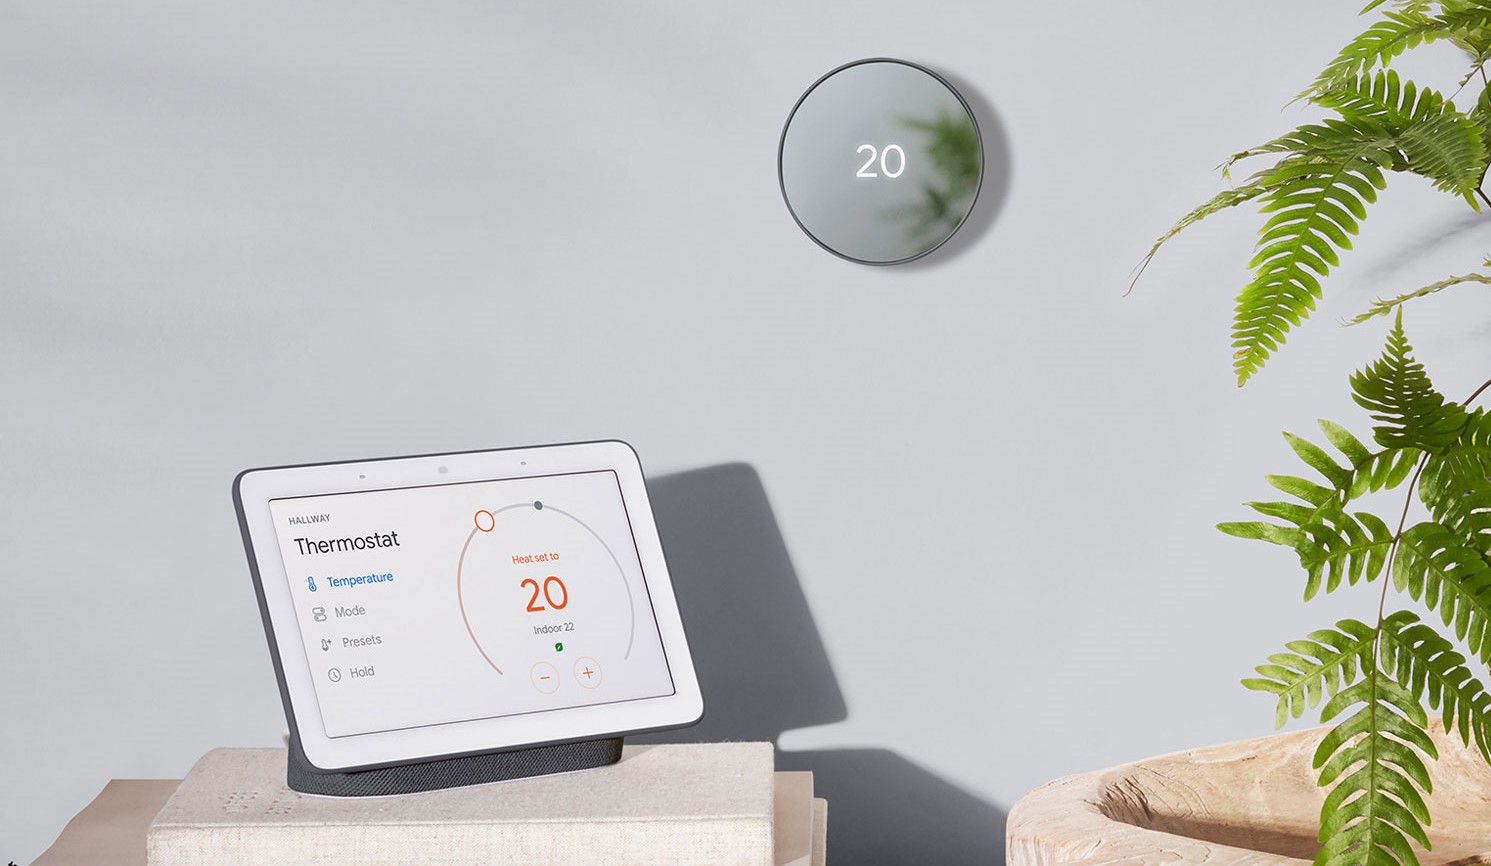 Google Sustainability Nest devices